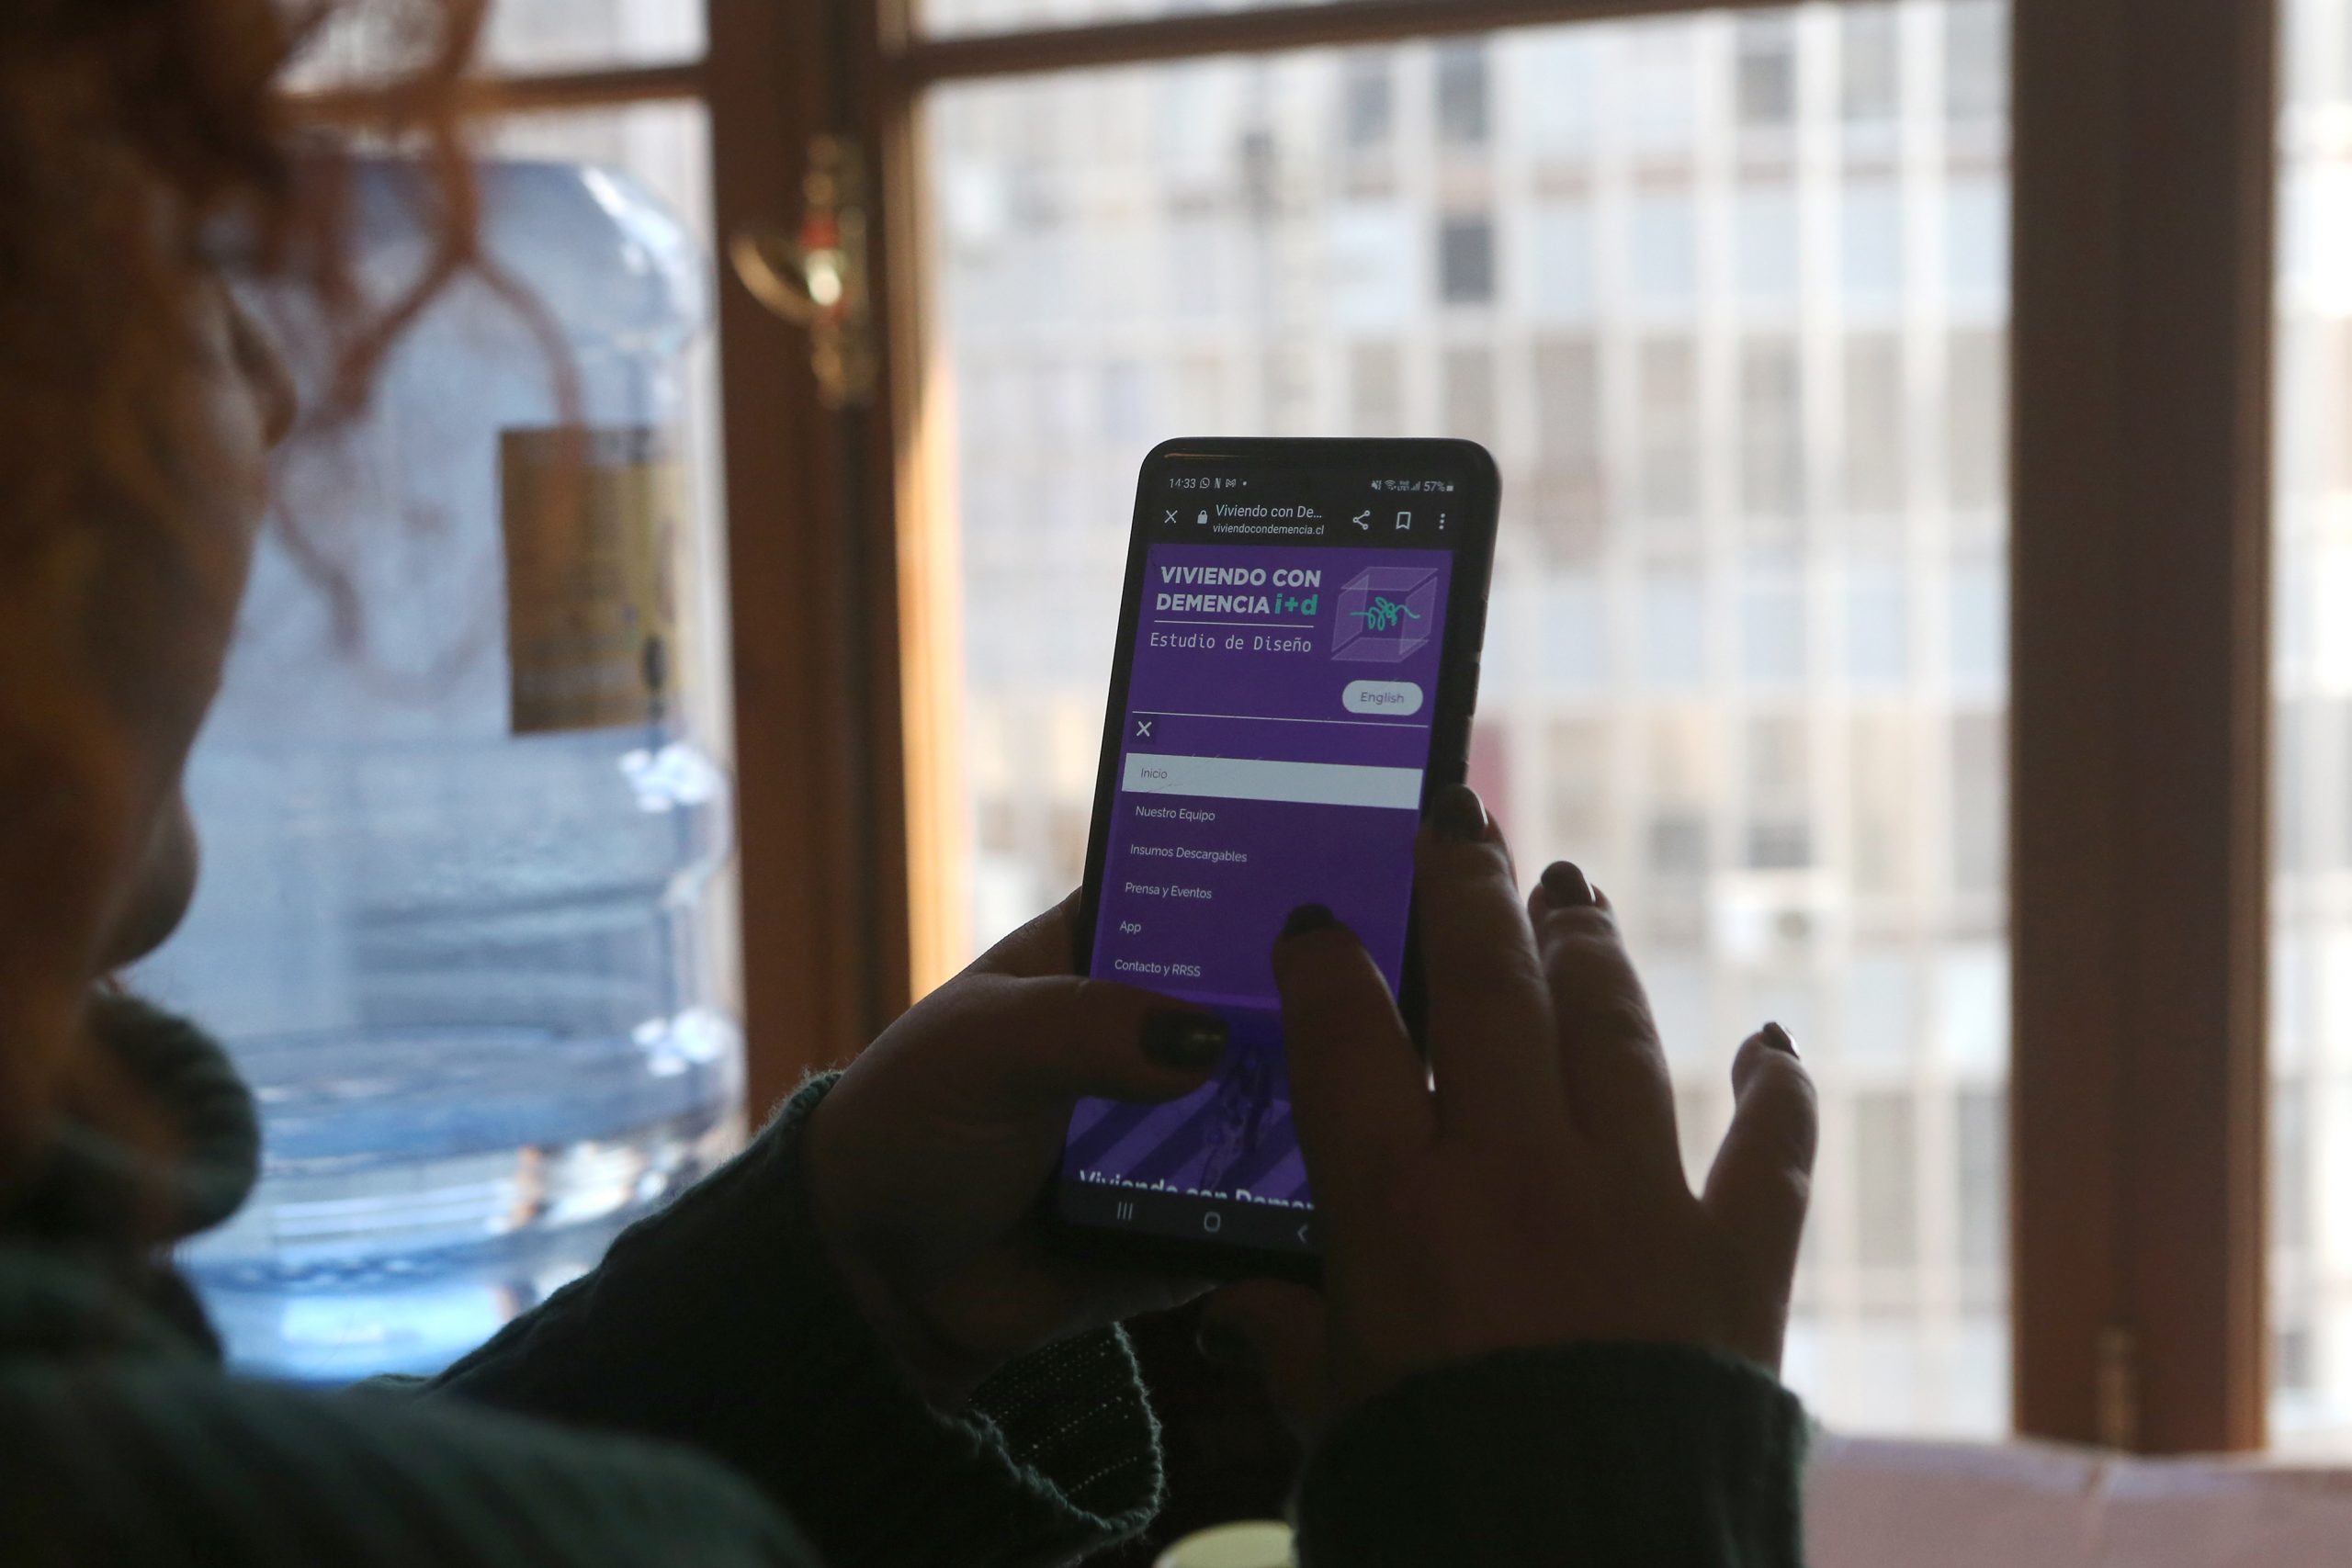  Investigadora chilena lanza app gratuita para adaptar viviendas a personas que viven con demencia